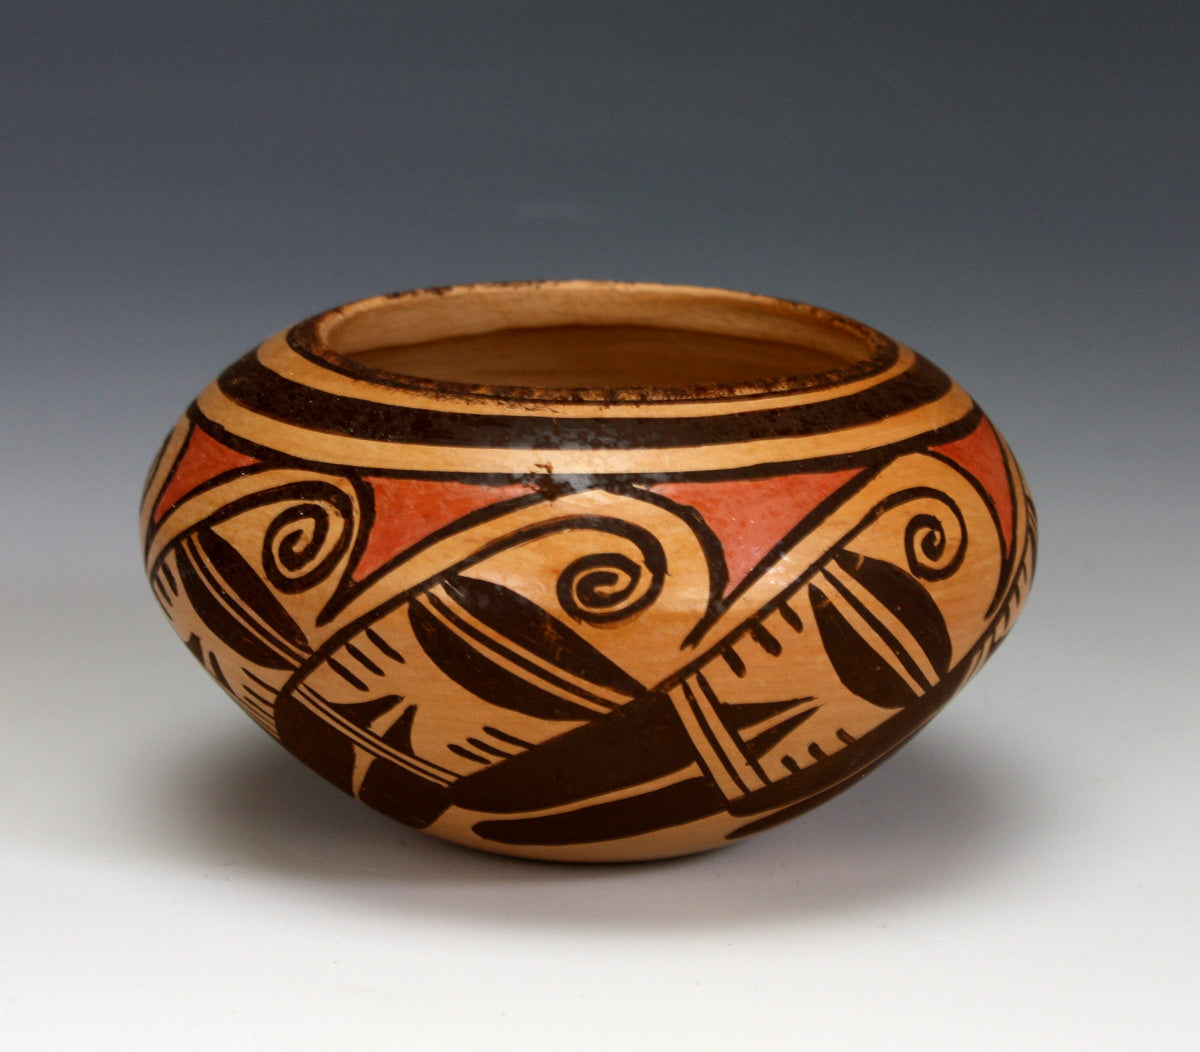 Hopi American Indian Pottery Small Bowl #6 - Chereen Lalo Nampeyo